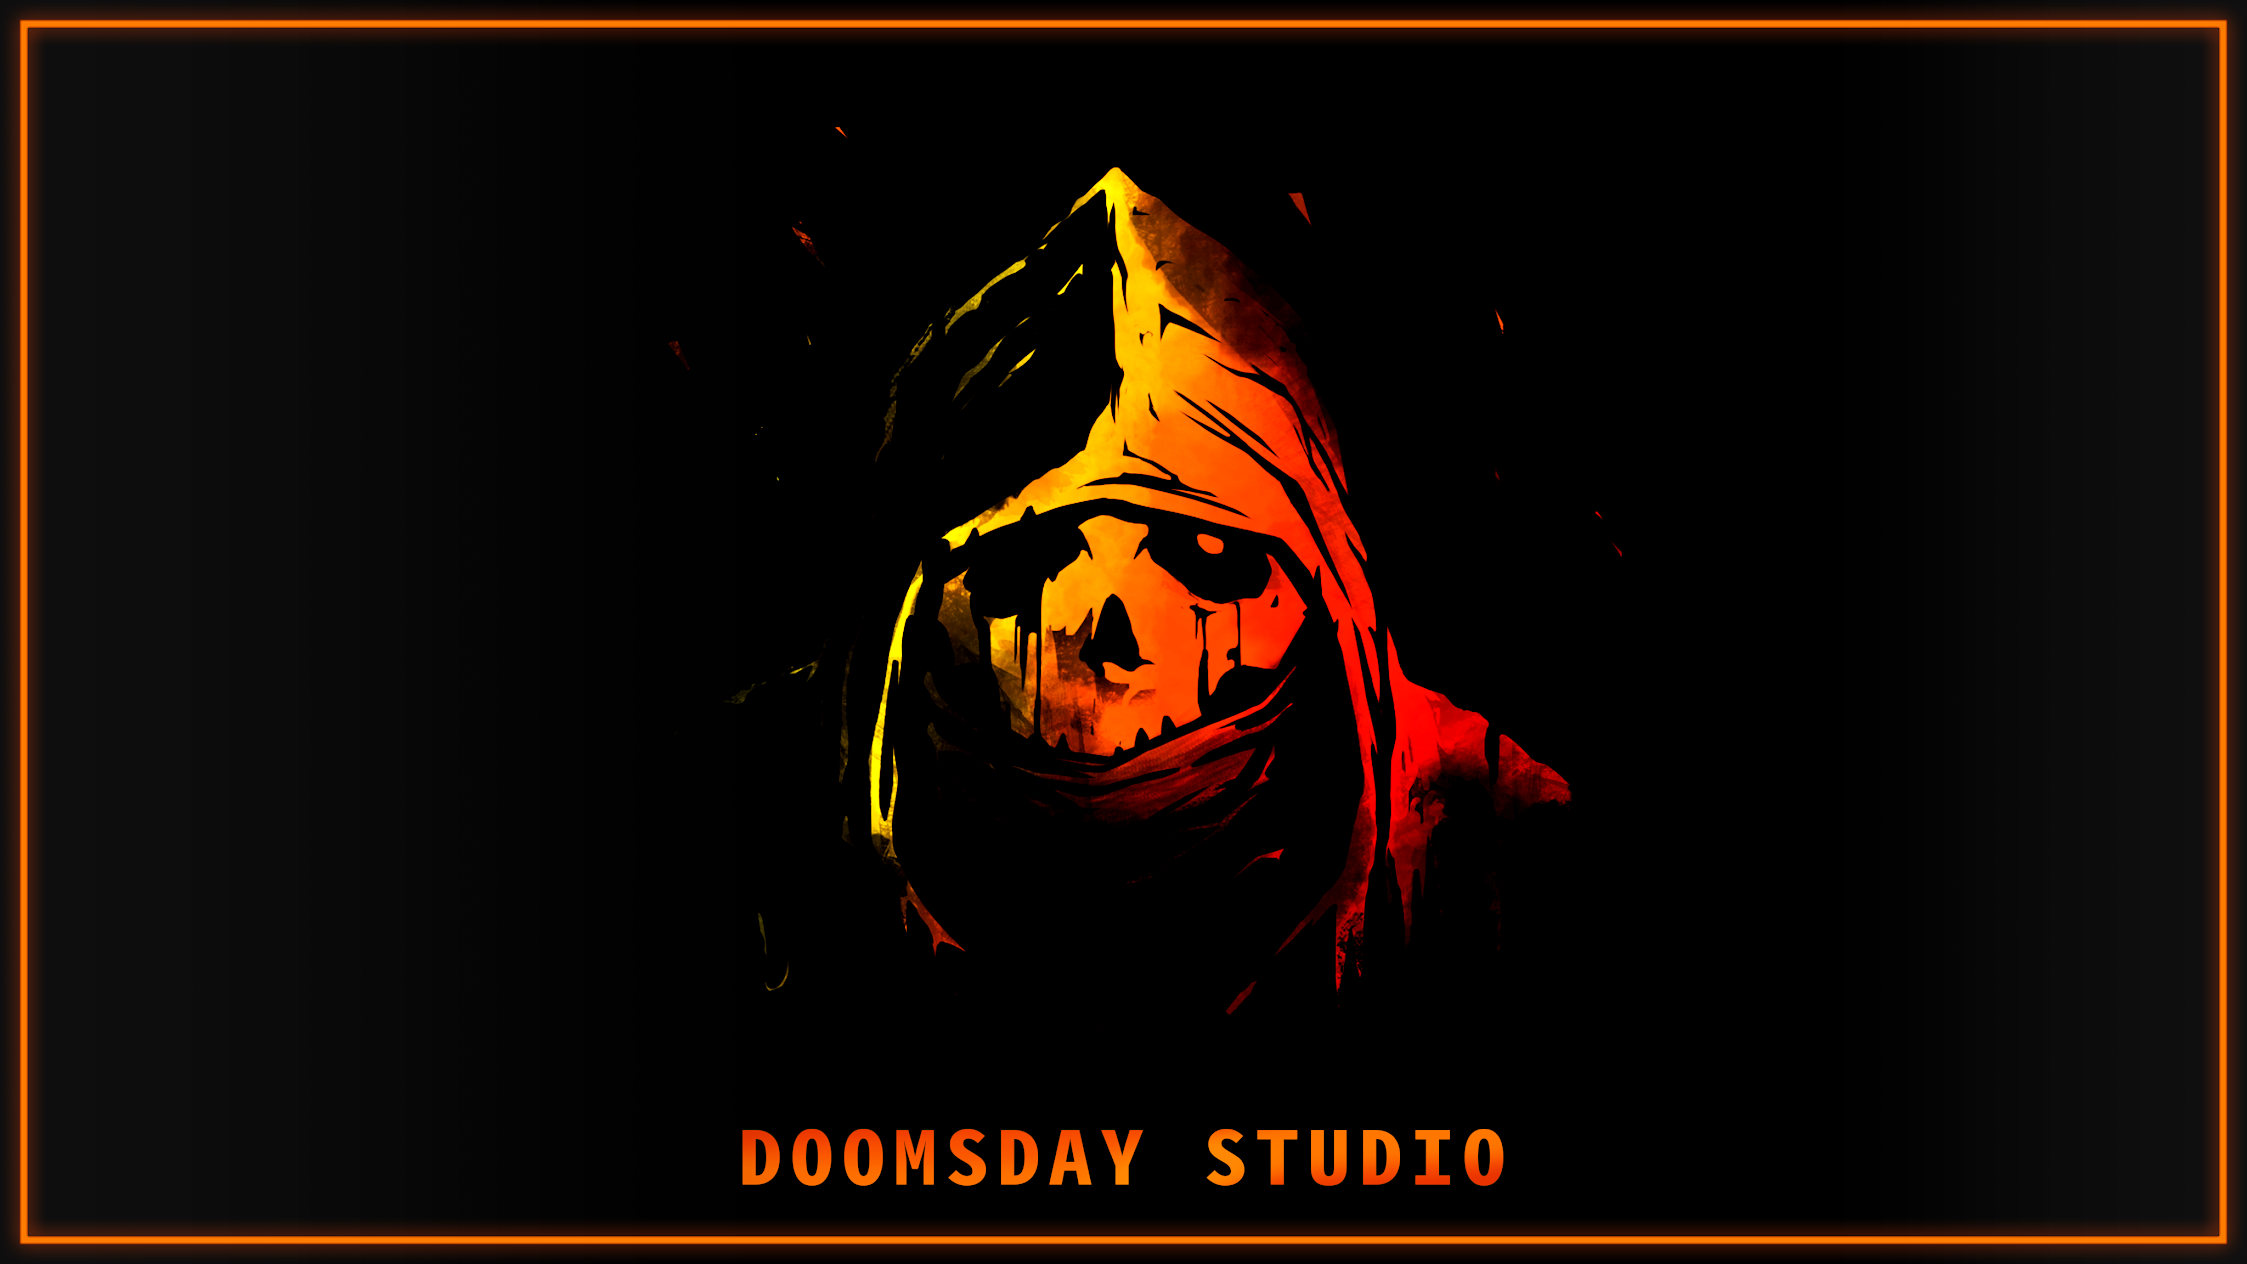 DOOMSDAY Studio